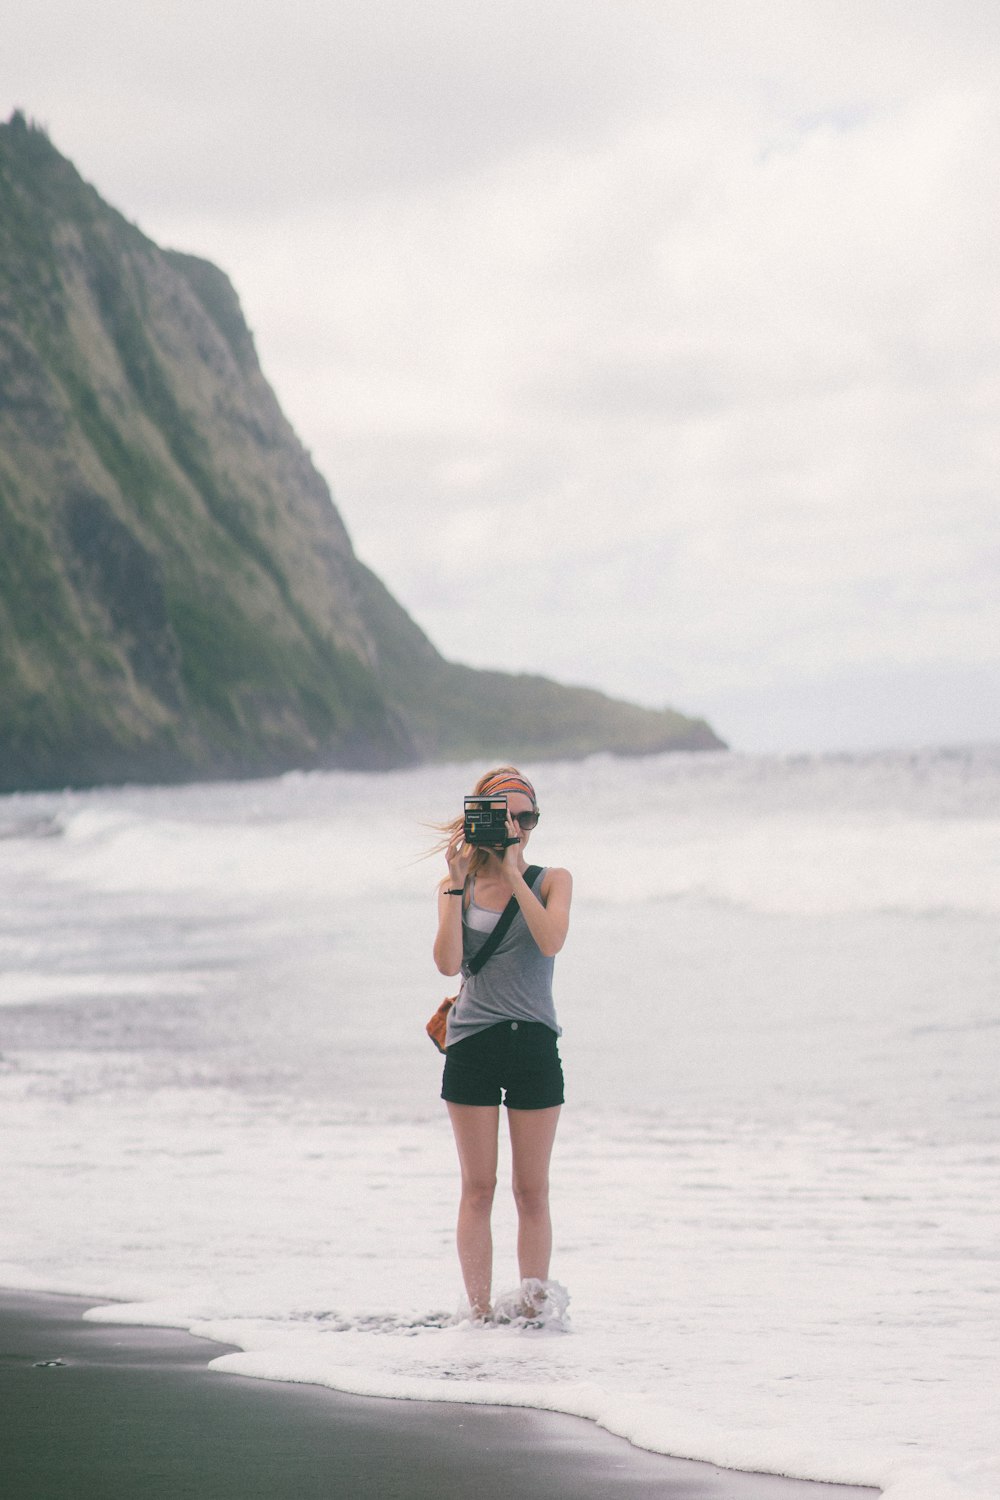 해변에 서 있는 카메라를 들고 있는 여자